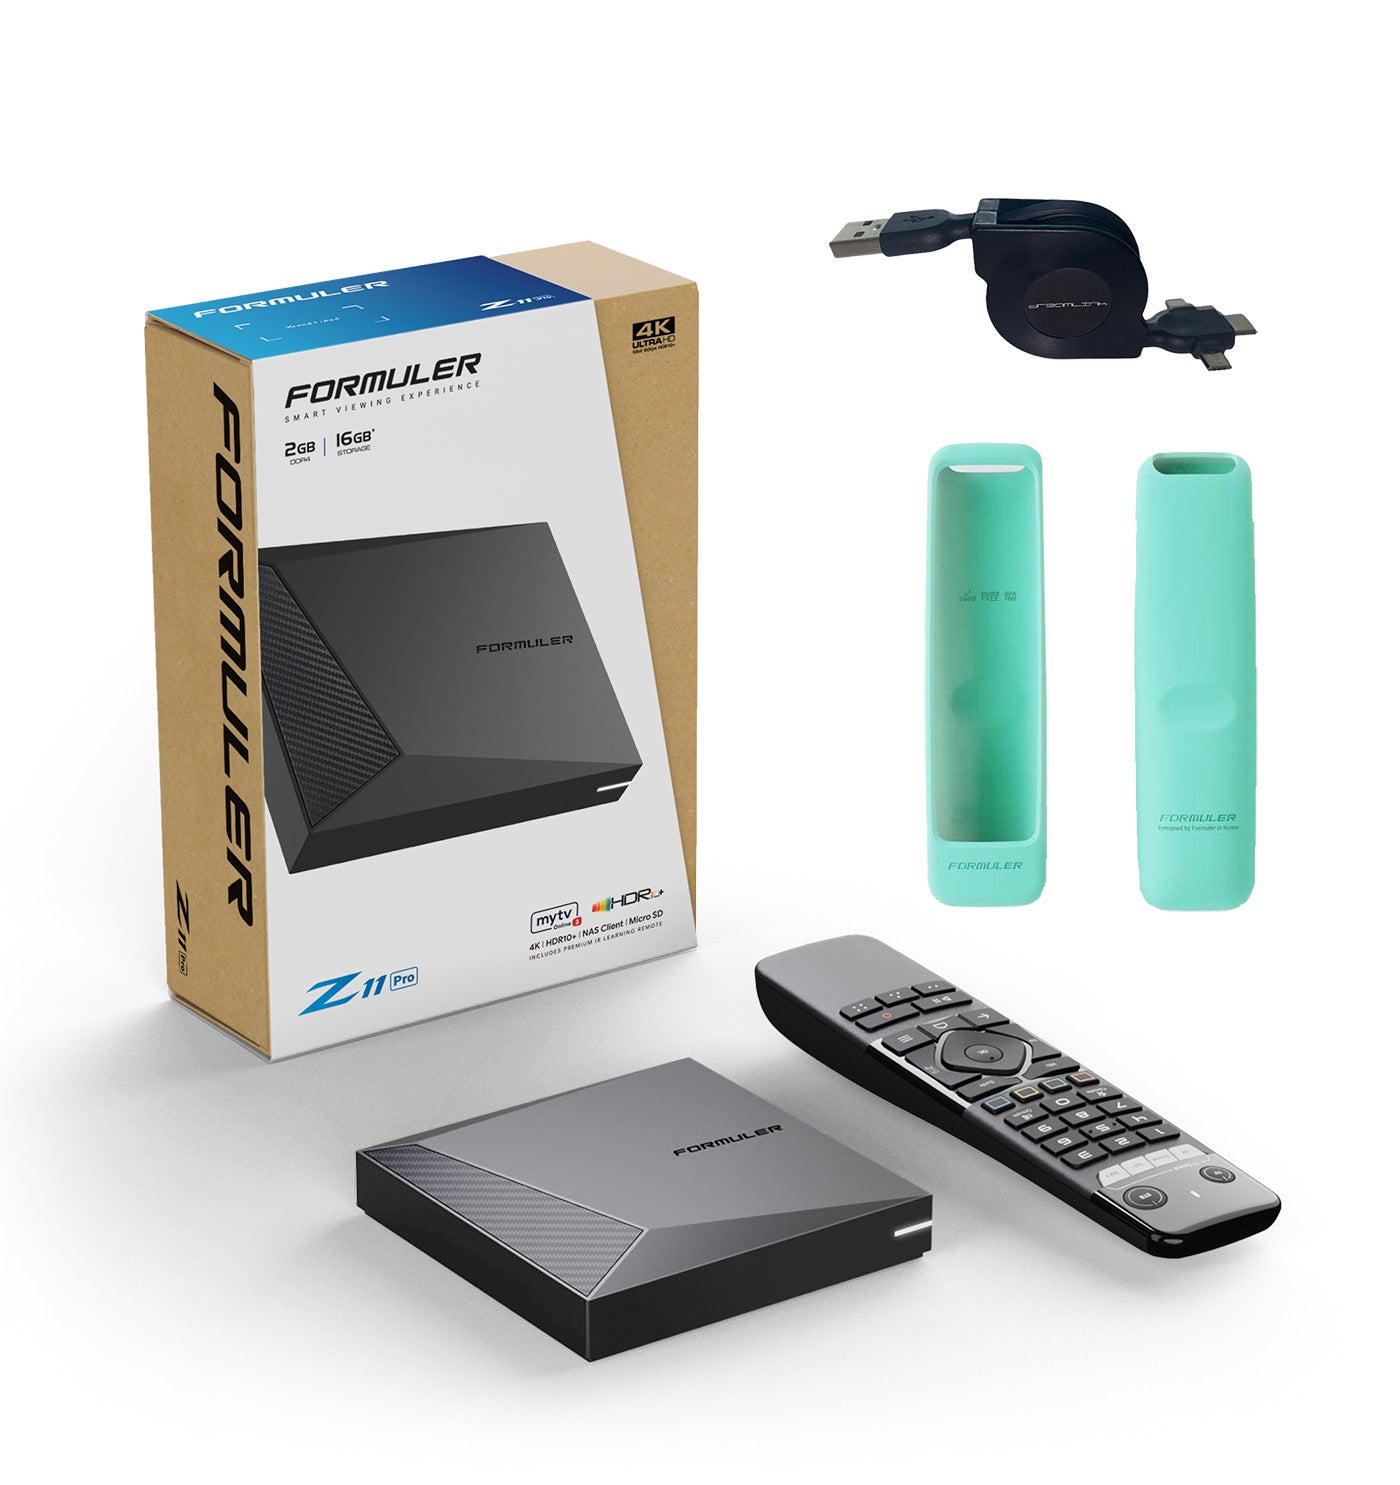 Formuler Z11 Pro + ACCESSOIRE GRATUIT : 1x Coque Télécommande Turquoise + 1x Câble USB Rétractable